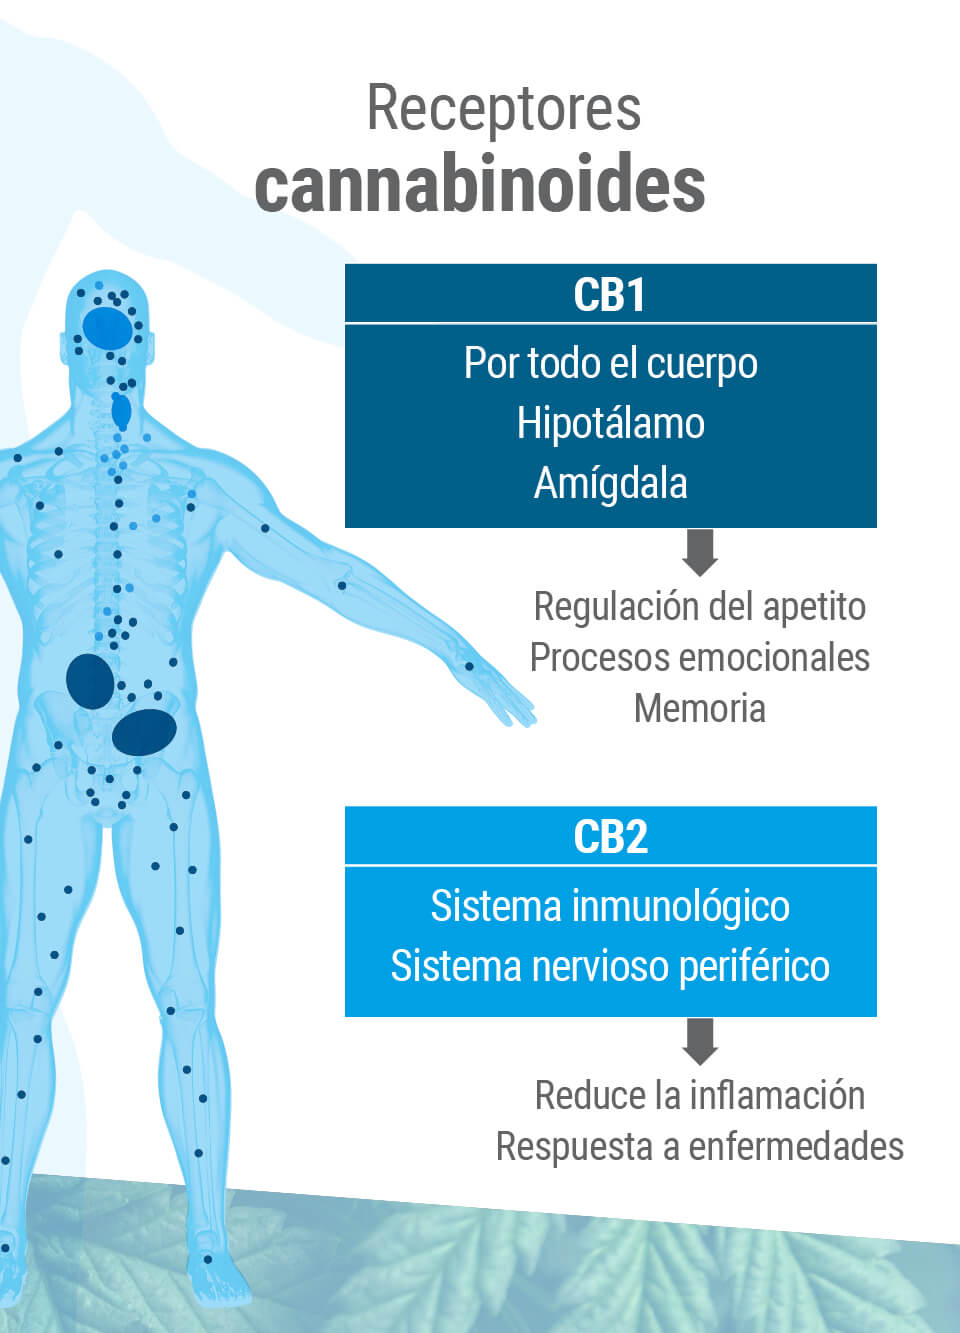 El sistema endocannabinoide presenta dos tipos principales de receptores: CB1 y CB2